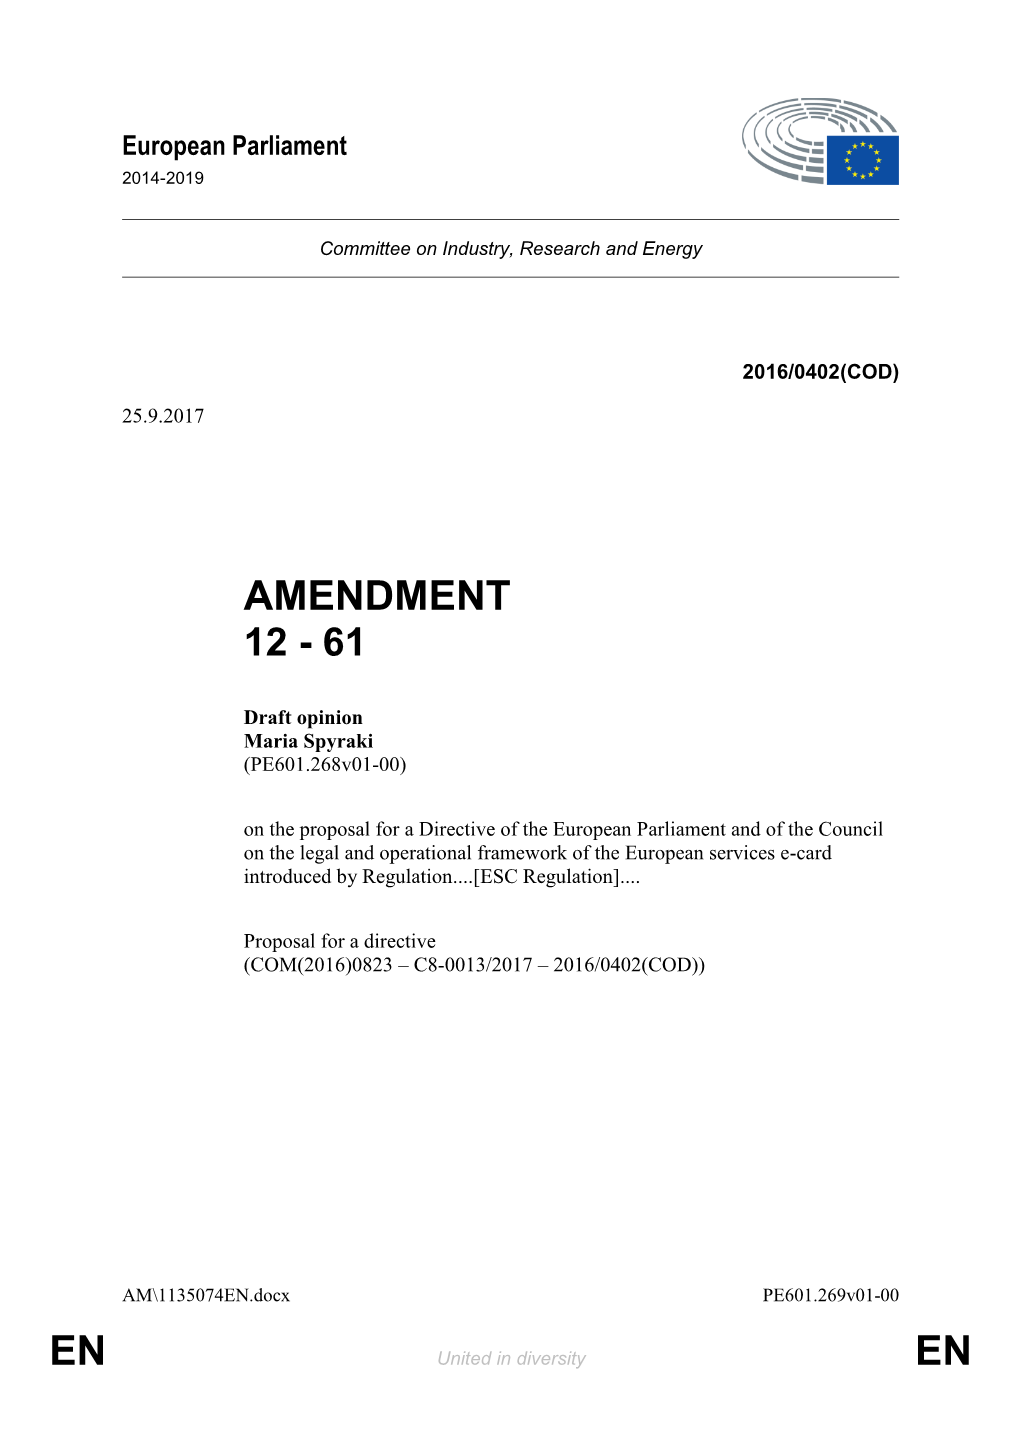 En En Amendment